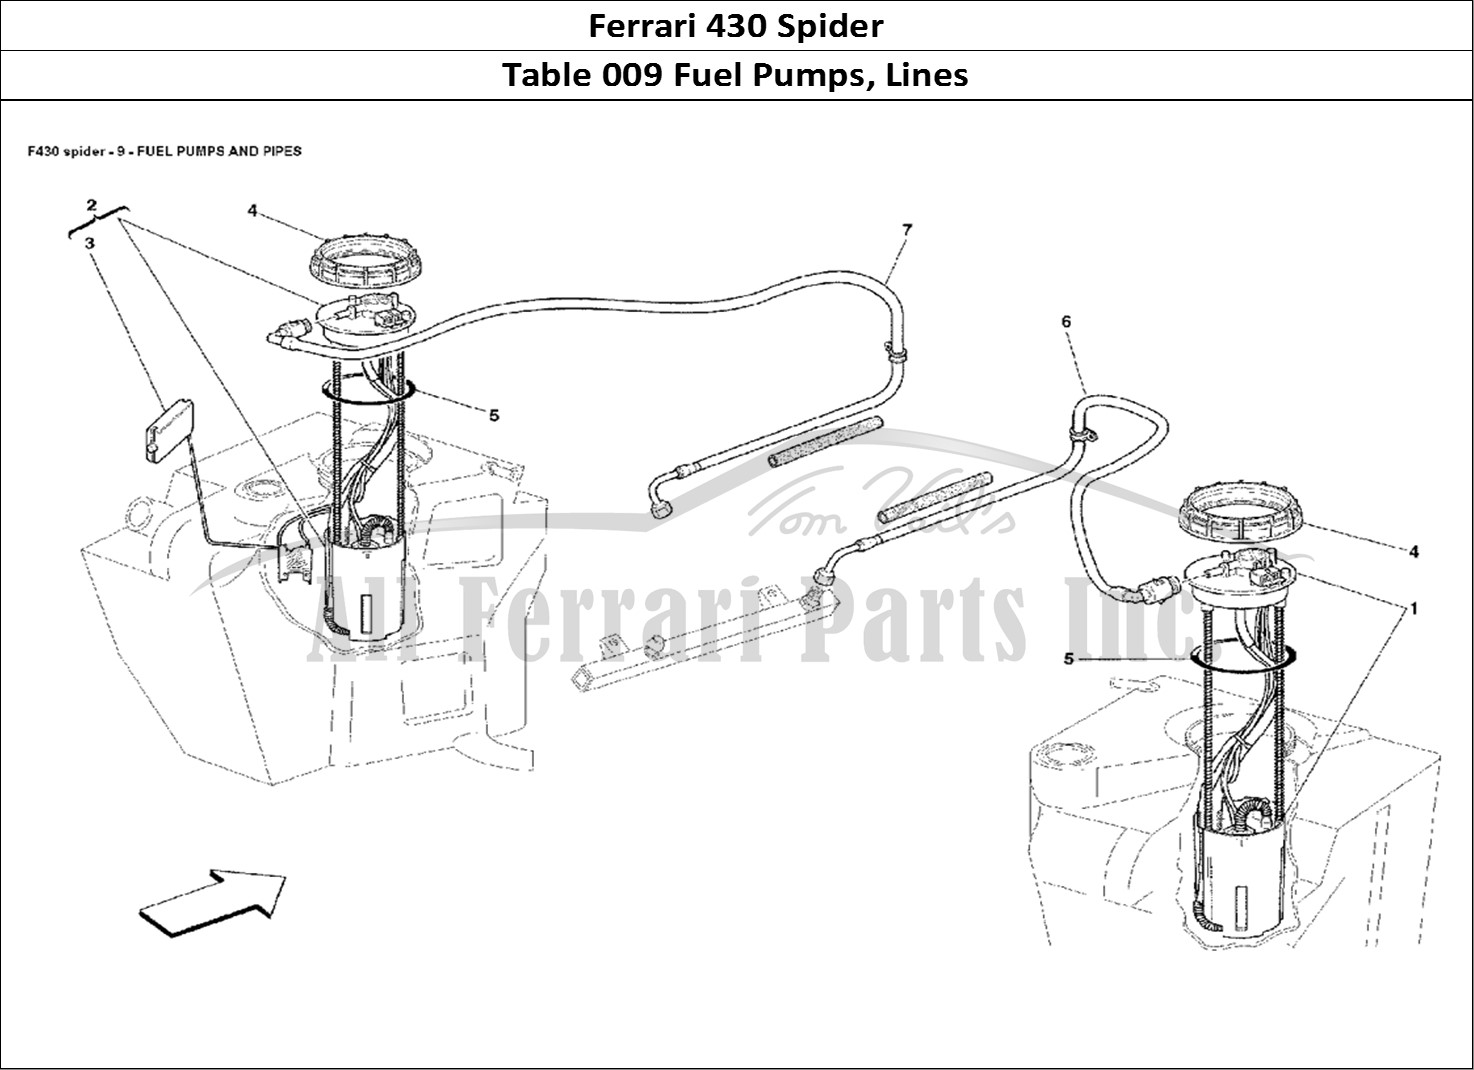 Ferrari Parts Ferrari 430 Spider Page 009 Fuel Pumps and Pipes